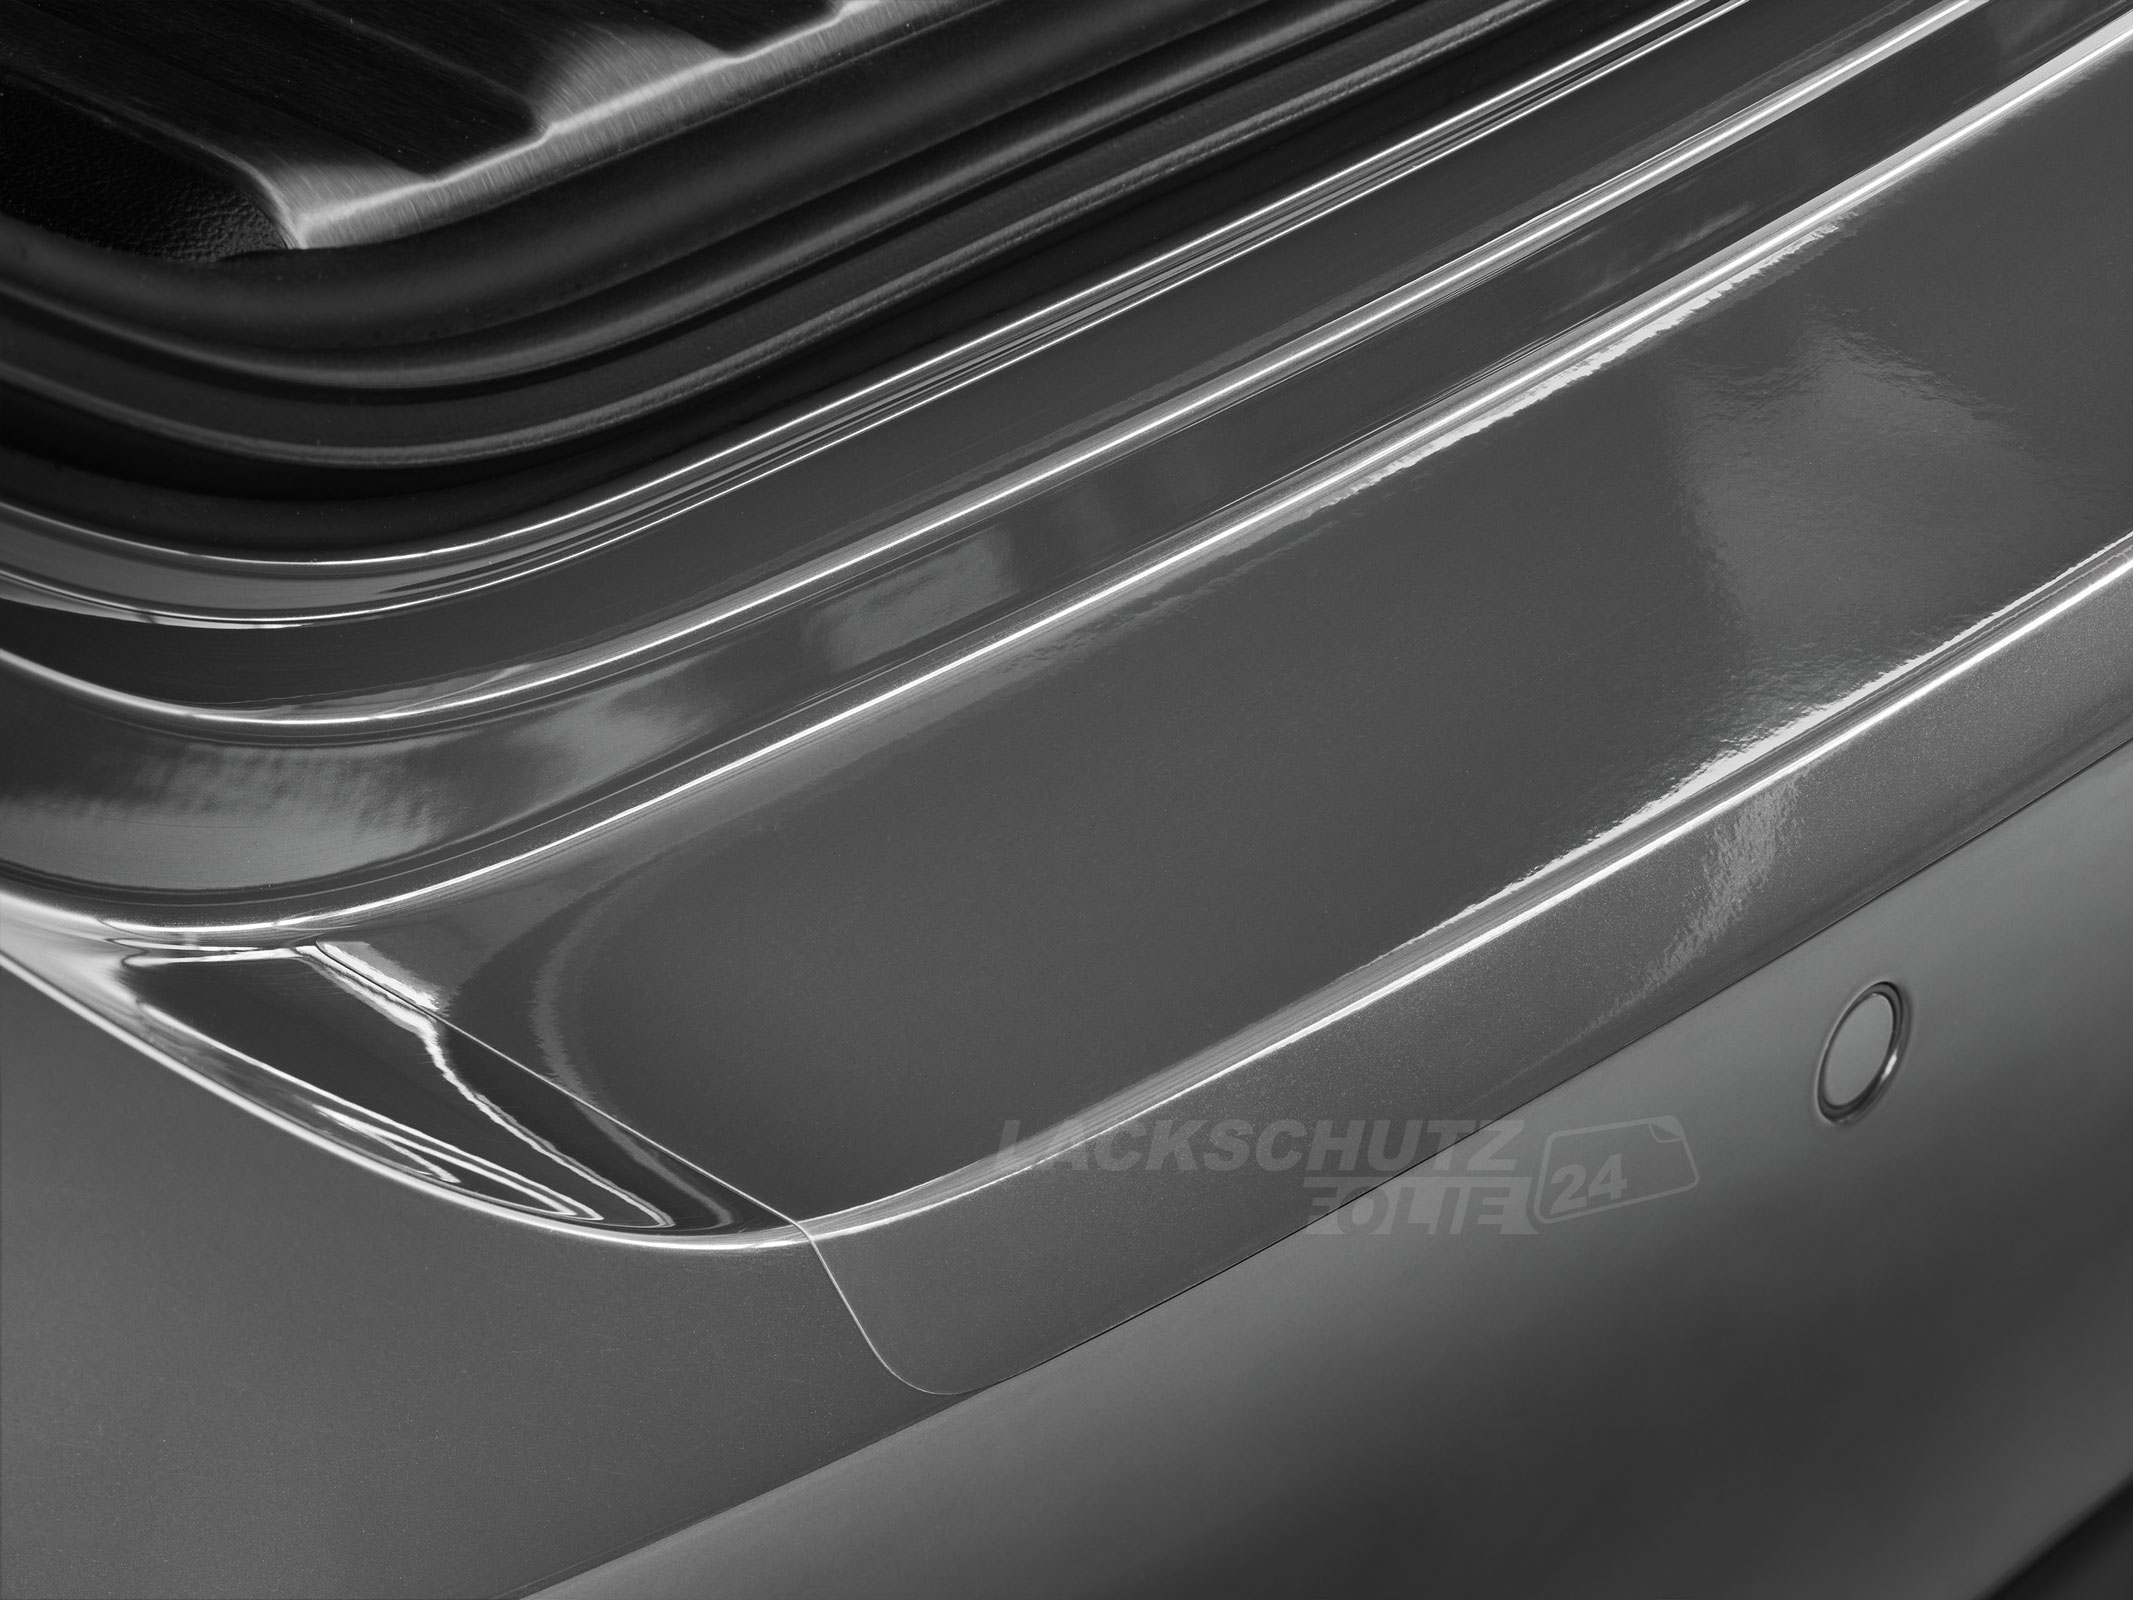 Ladekantenschutzfolie - Transparent Glatt Hochglänzend 150 µm stark für Chevrolet Cruze SW ab BJ 08/2012